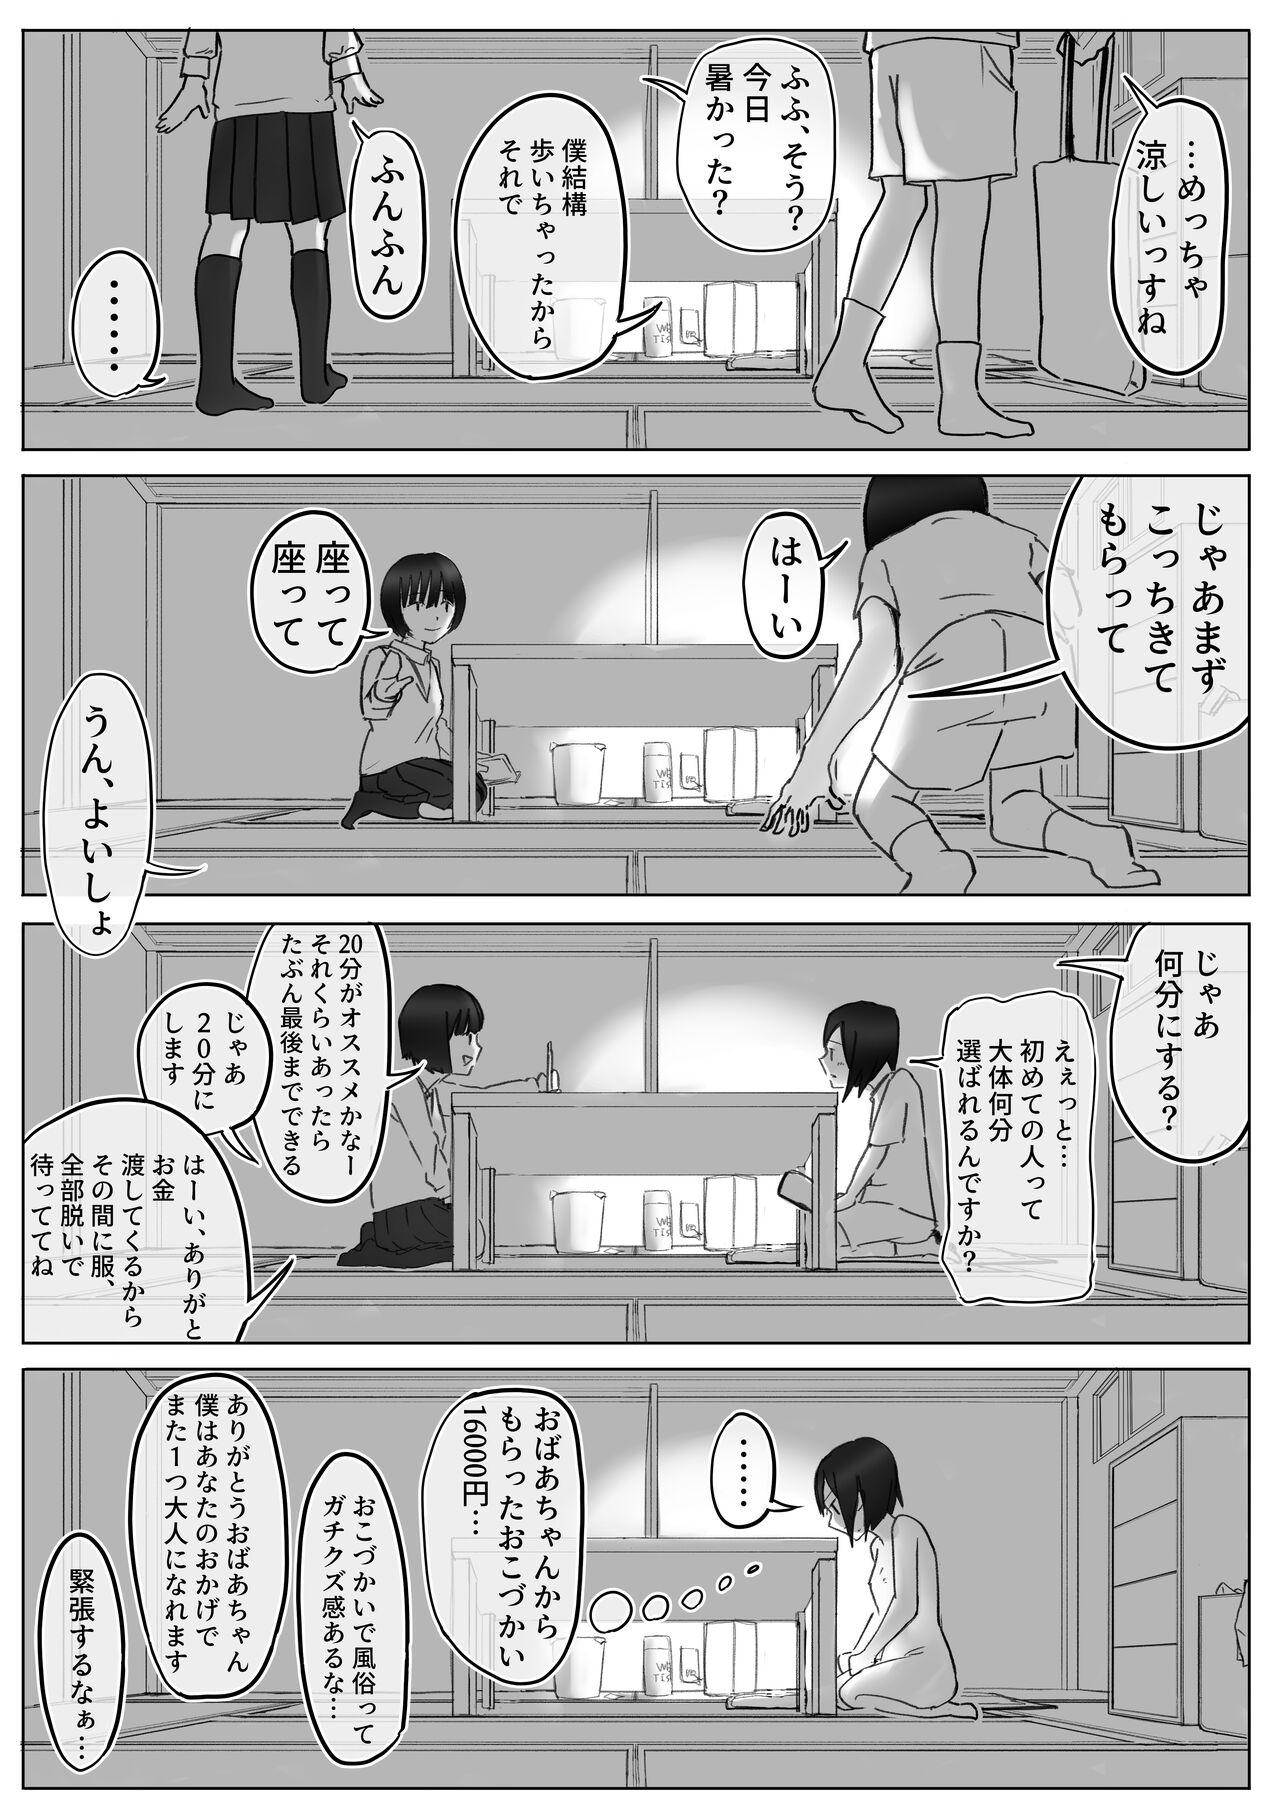 【風俗レポ漫画】飛田新地で童貞を捨てた話 10